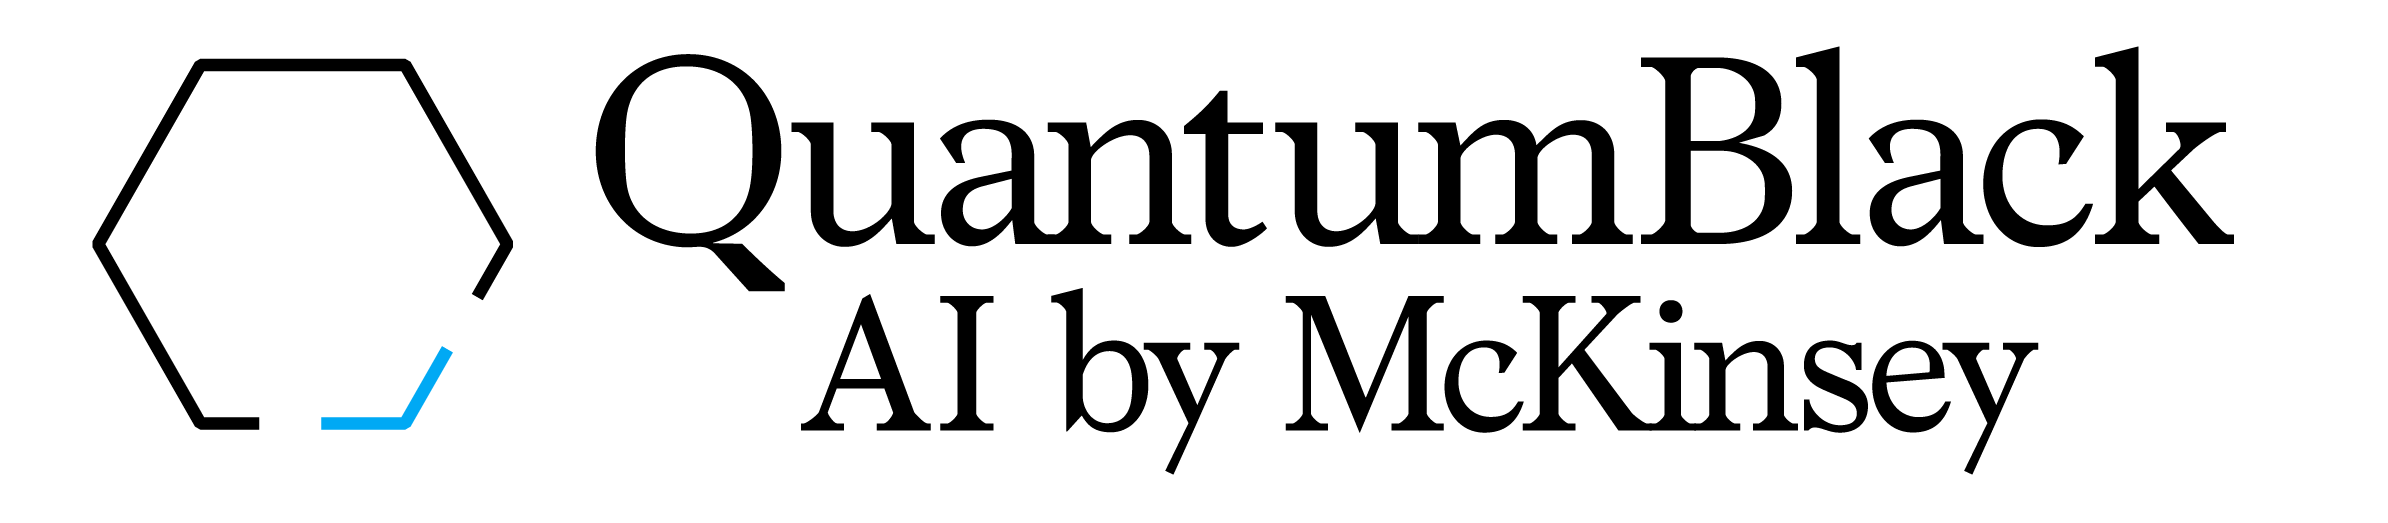 quantum black logo